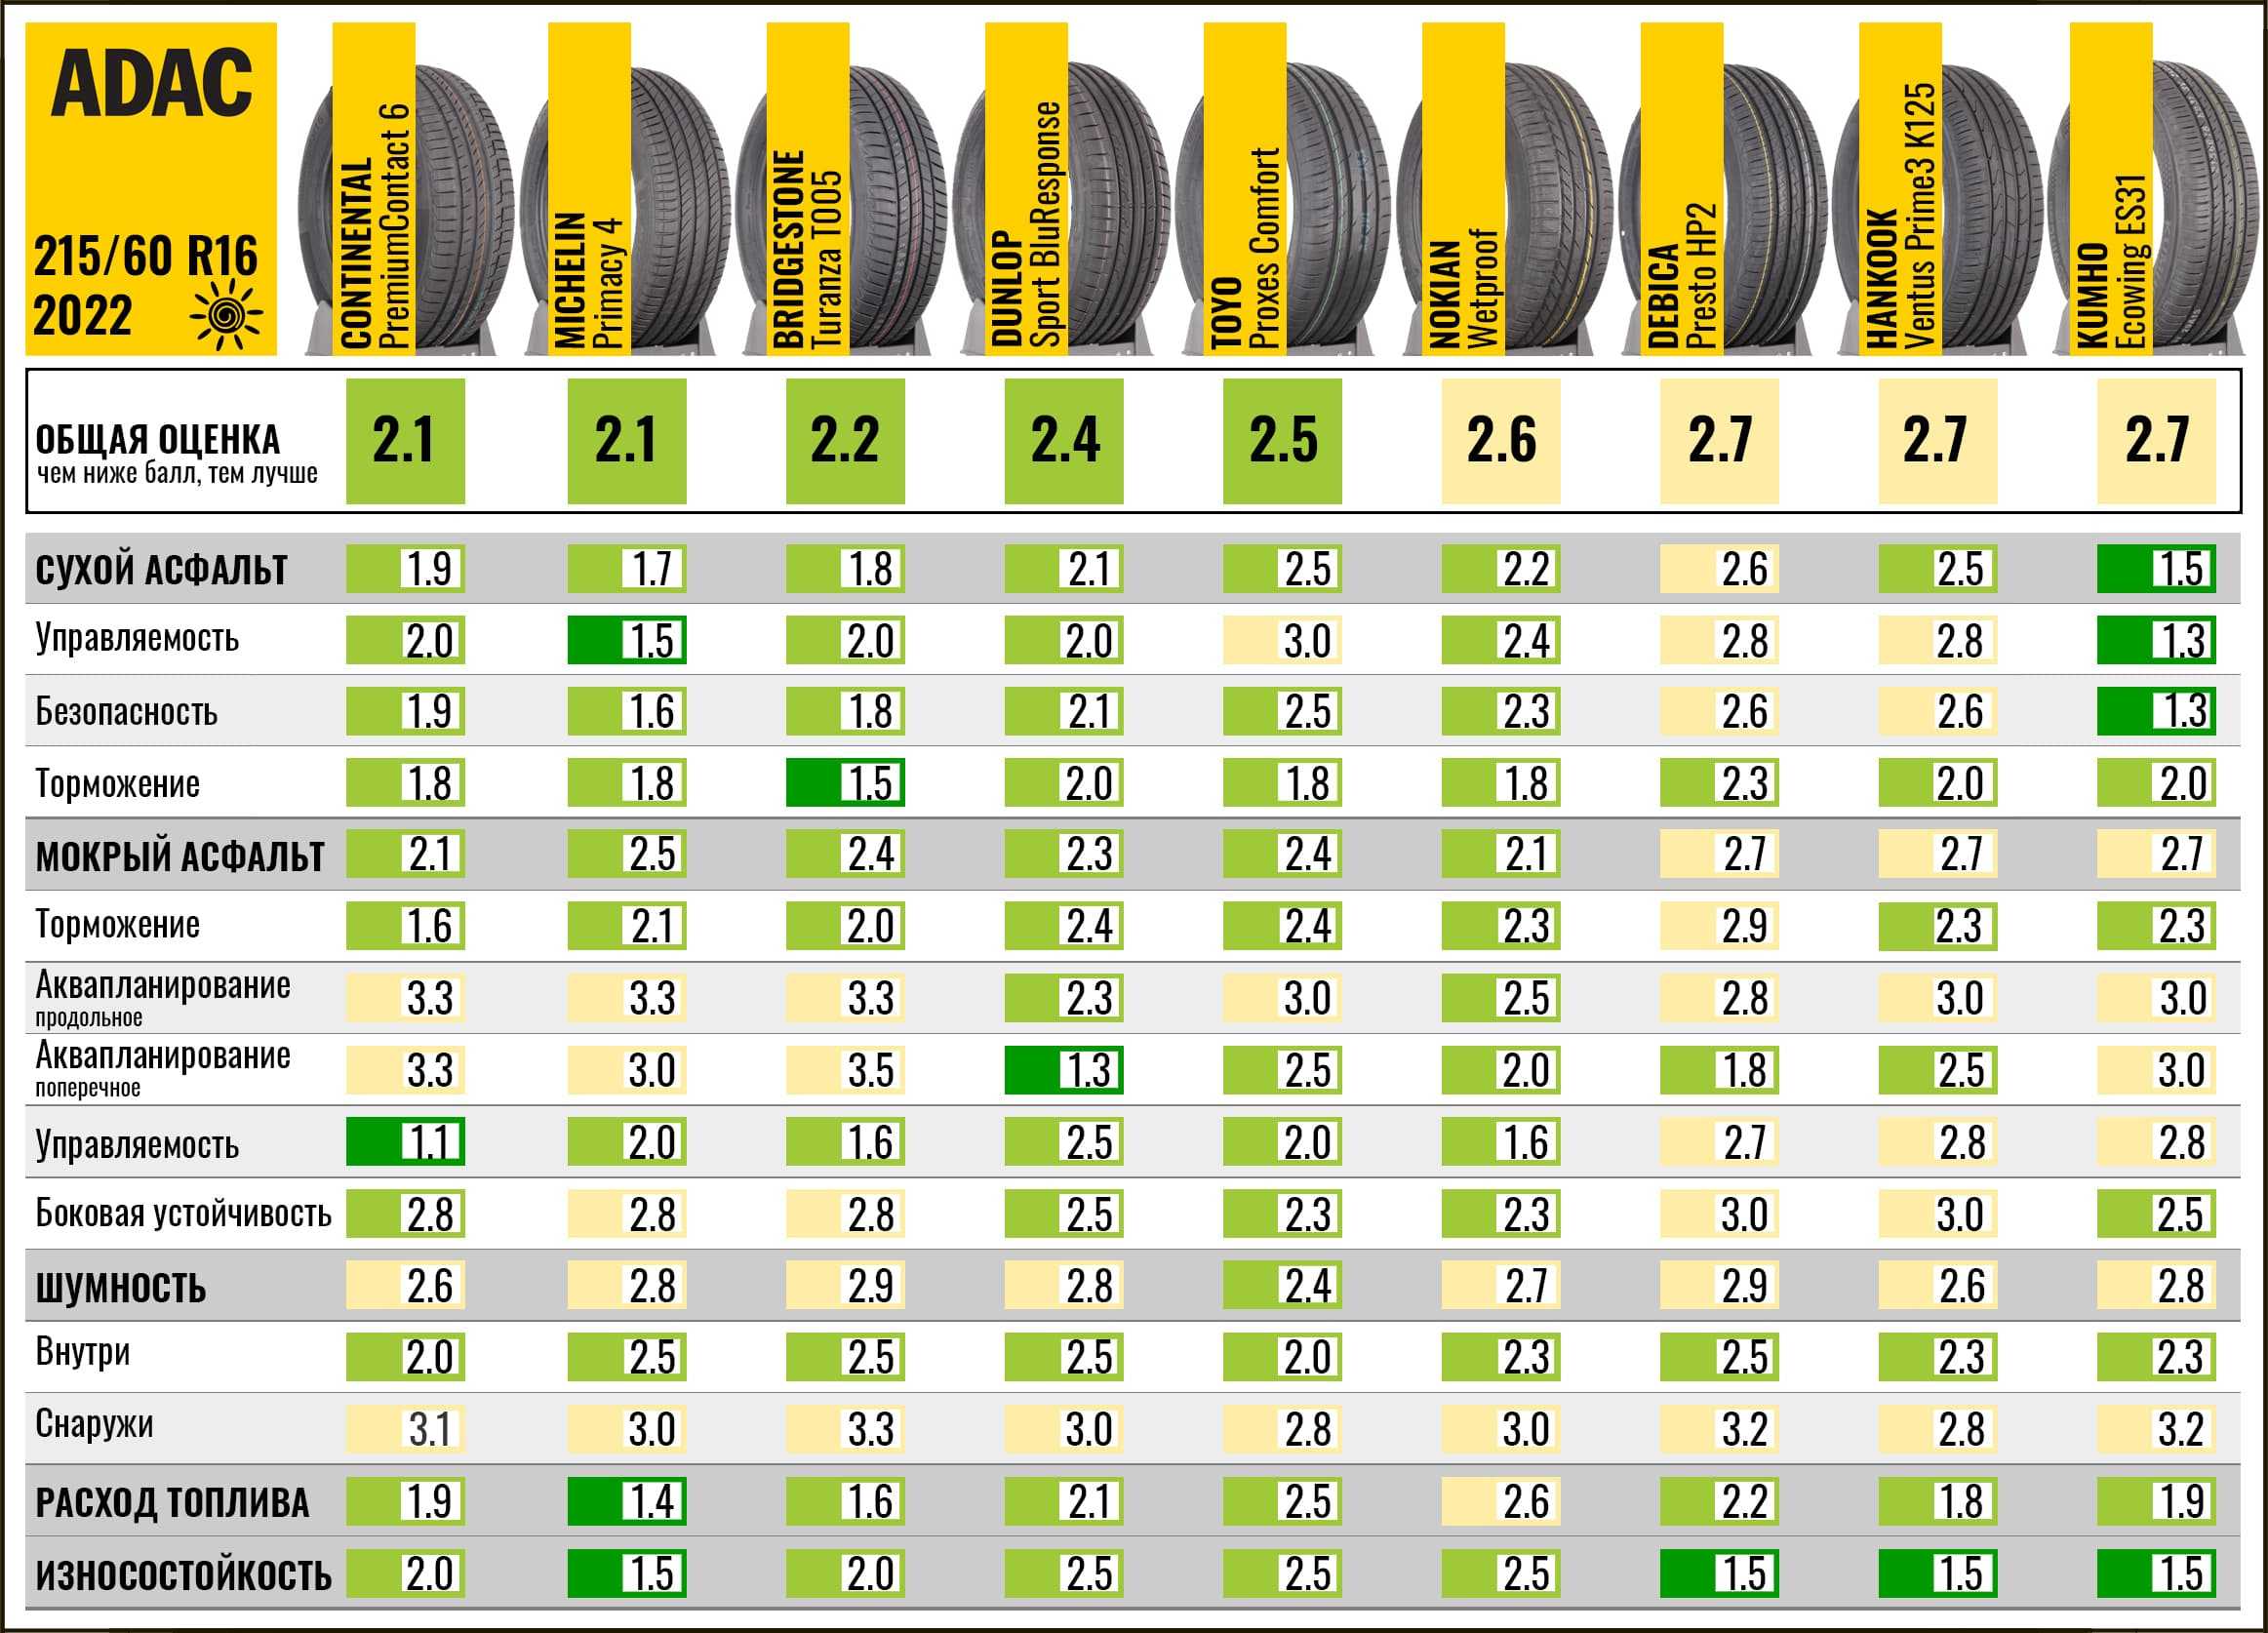 Рейтинг производителей летних шин. Топ летних шин 2022 r16 для легковых автомобилей. Лучшие летние шины r17 для кроссоверов 2022. Заменяемость автошин 215 65 r16. Тест шин ADAC 2023.